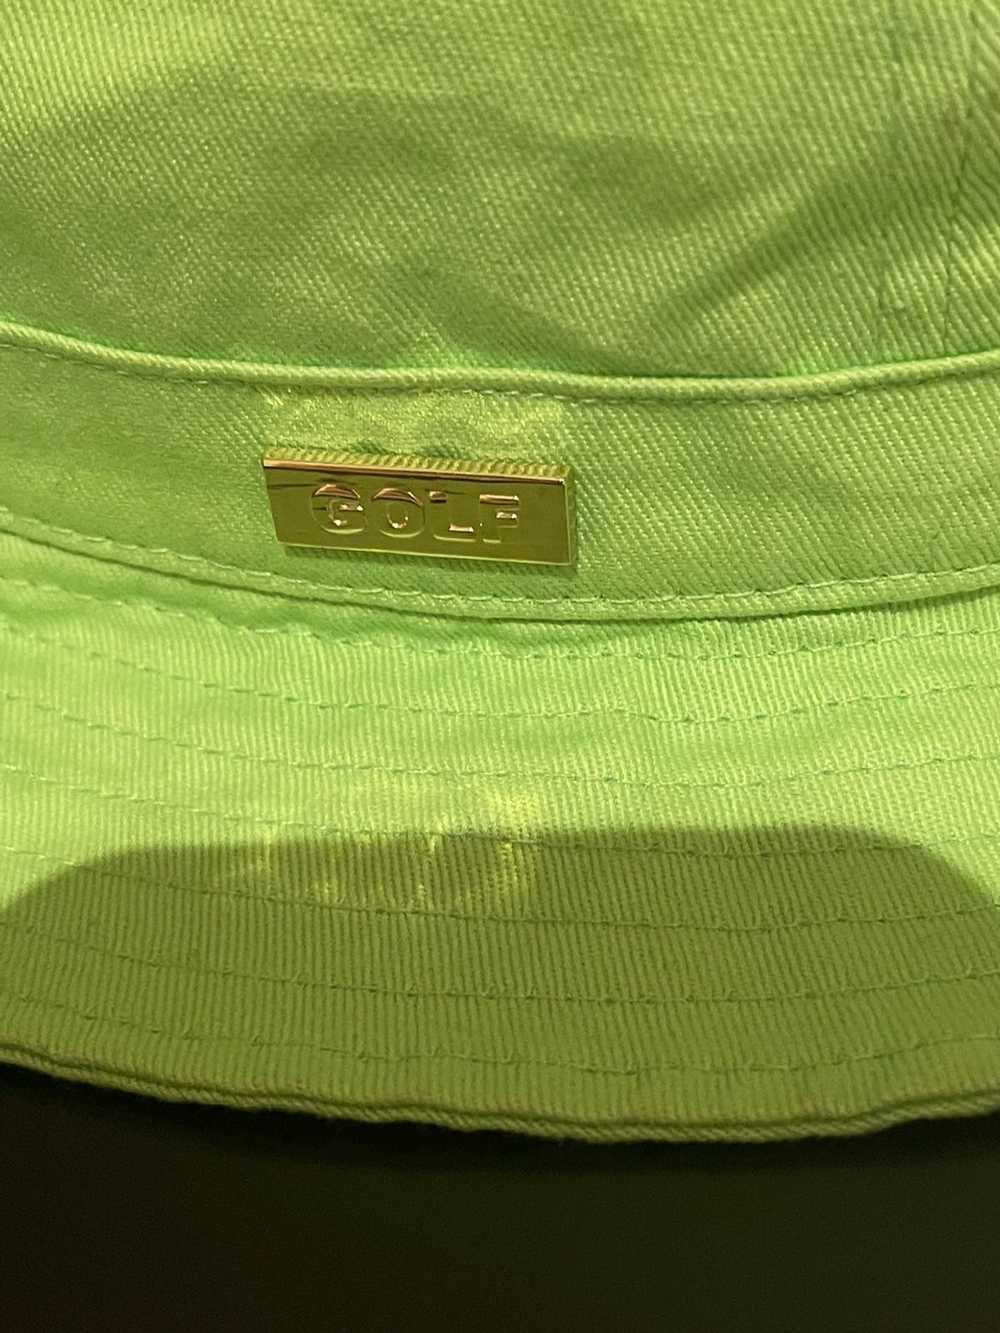 Golf Wang Bright green golf wang bucket hat - image 2